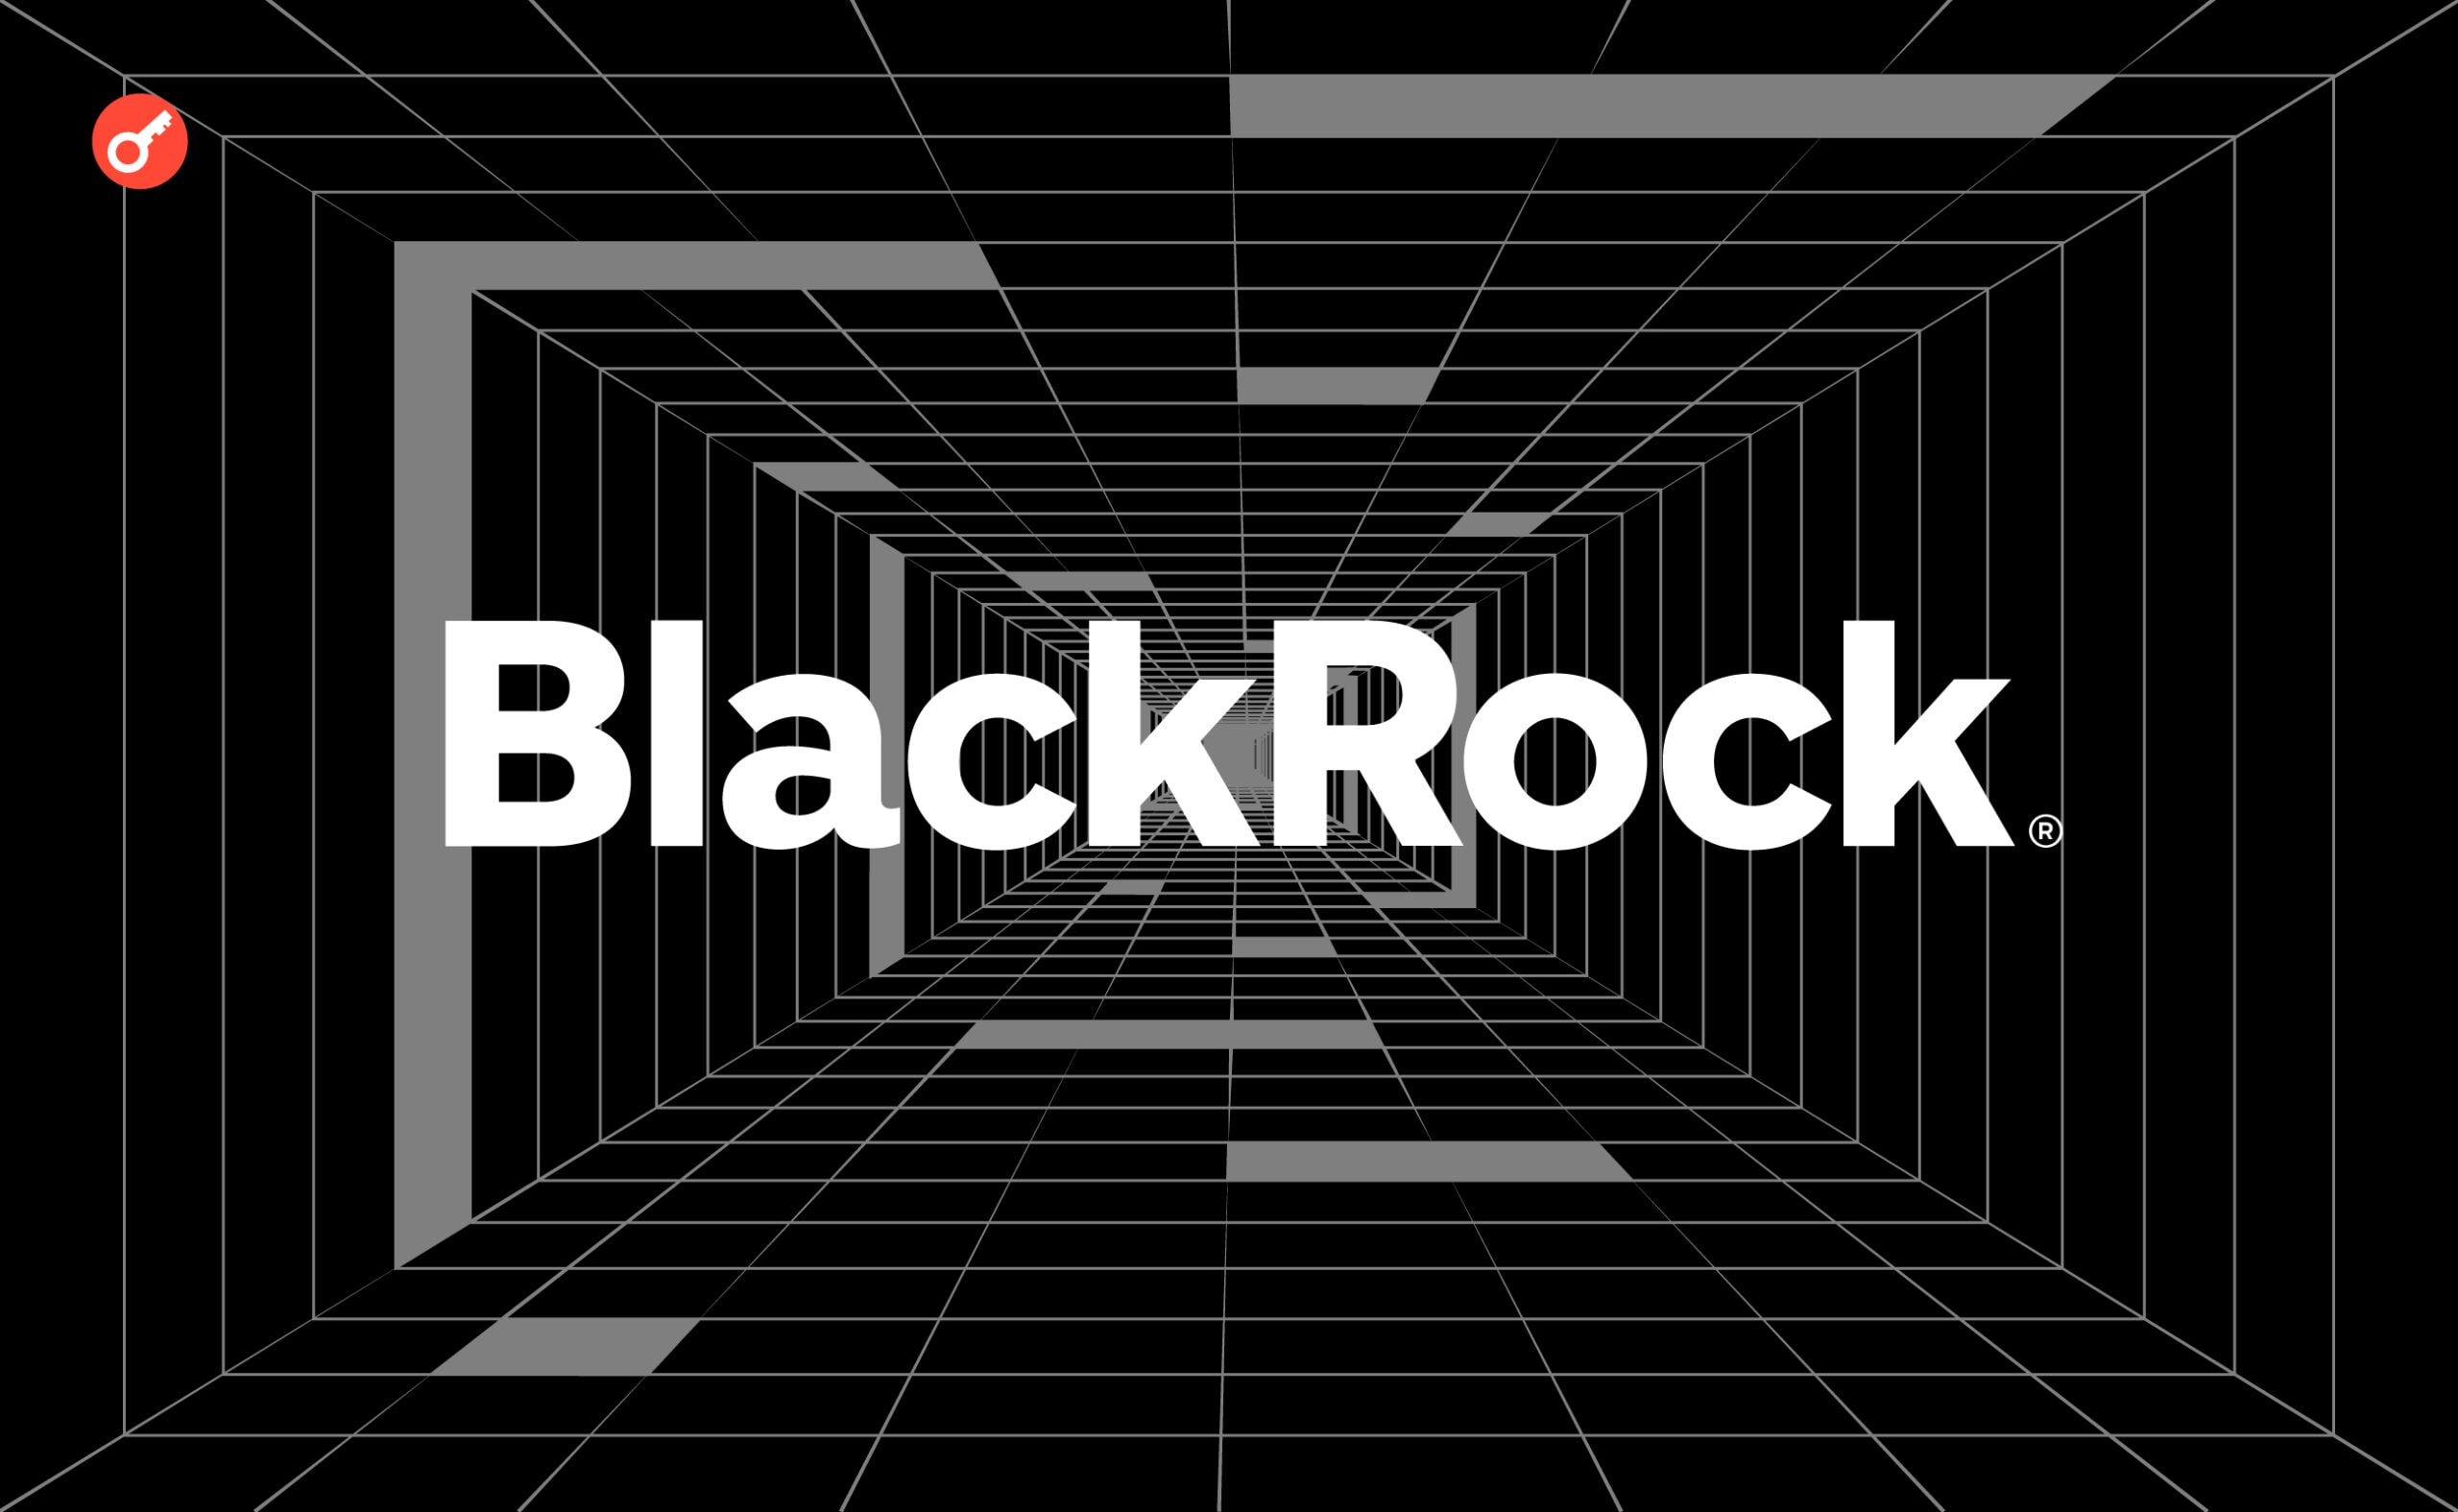 Обзор BlackRock: факты, технология Aladdin и её влияние на финансовые рынки. Заглавный коллаж статьи.